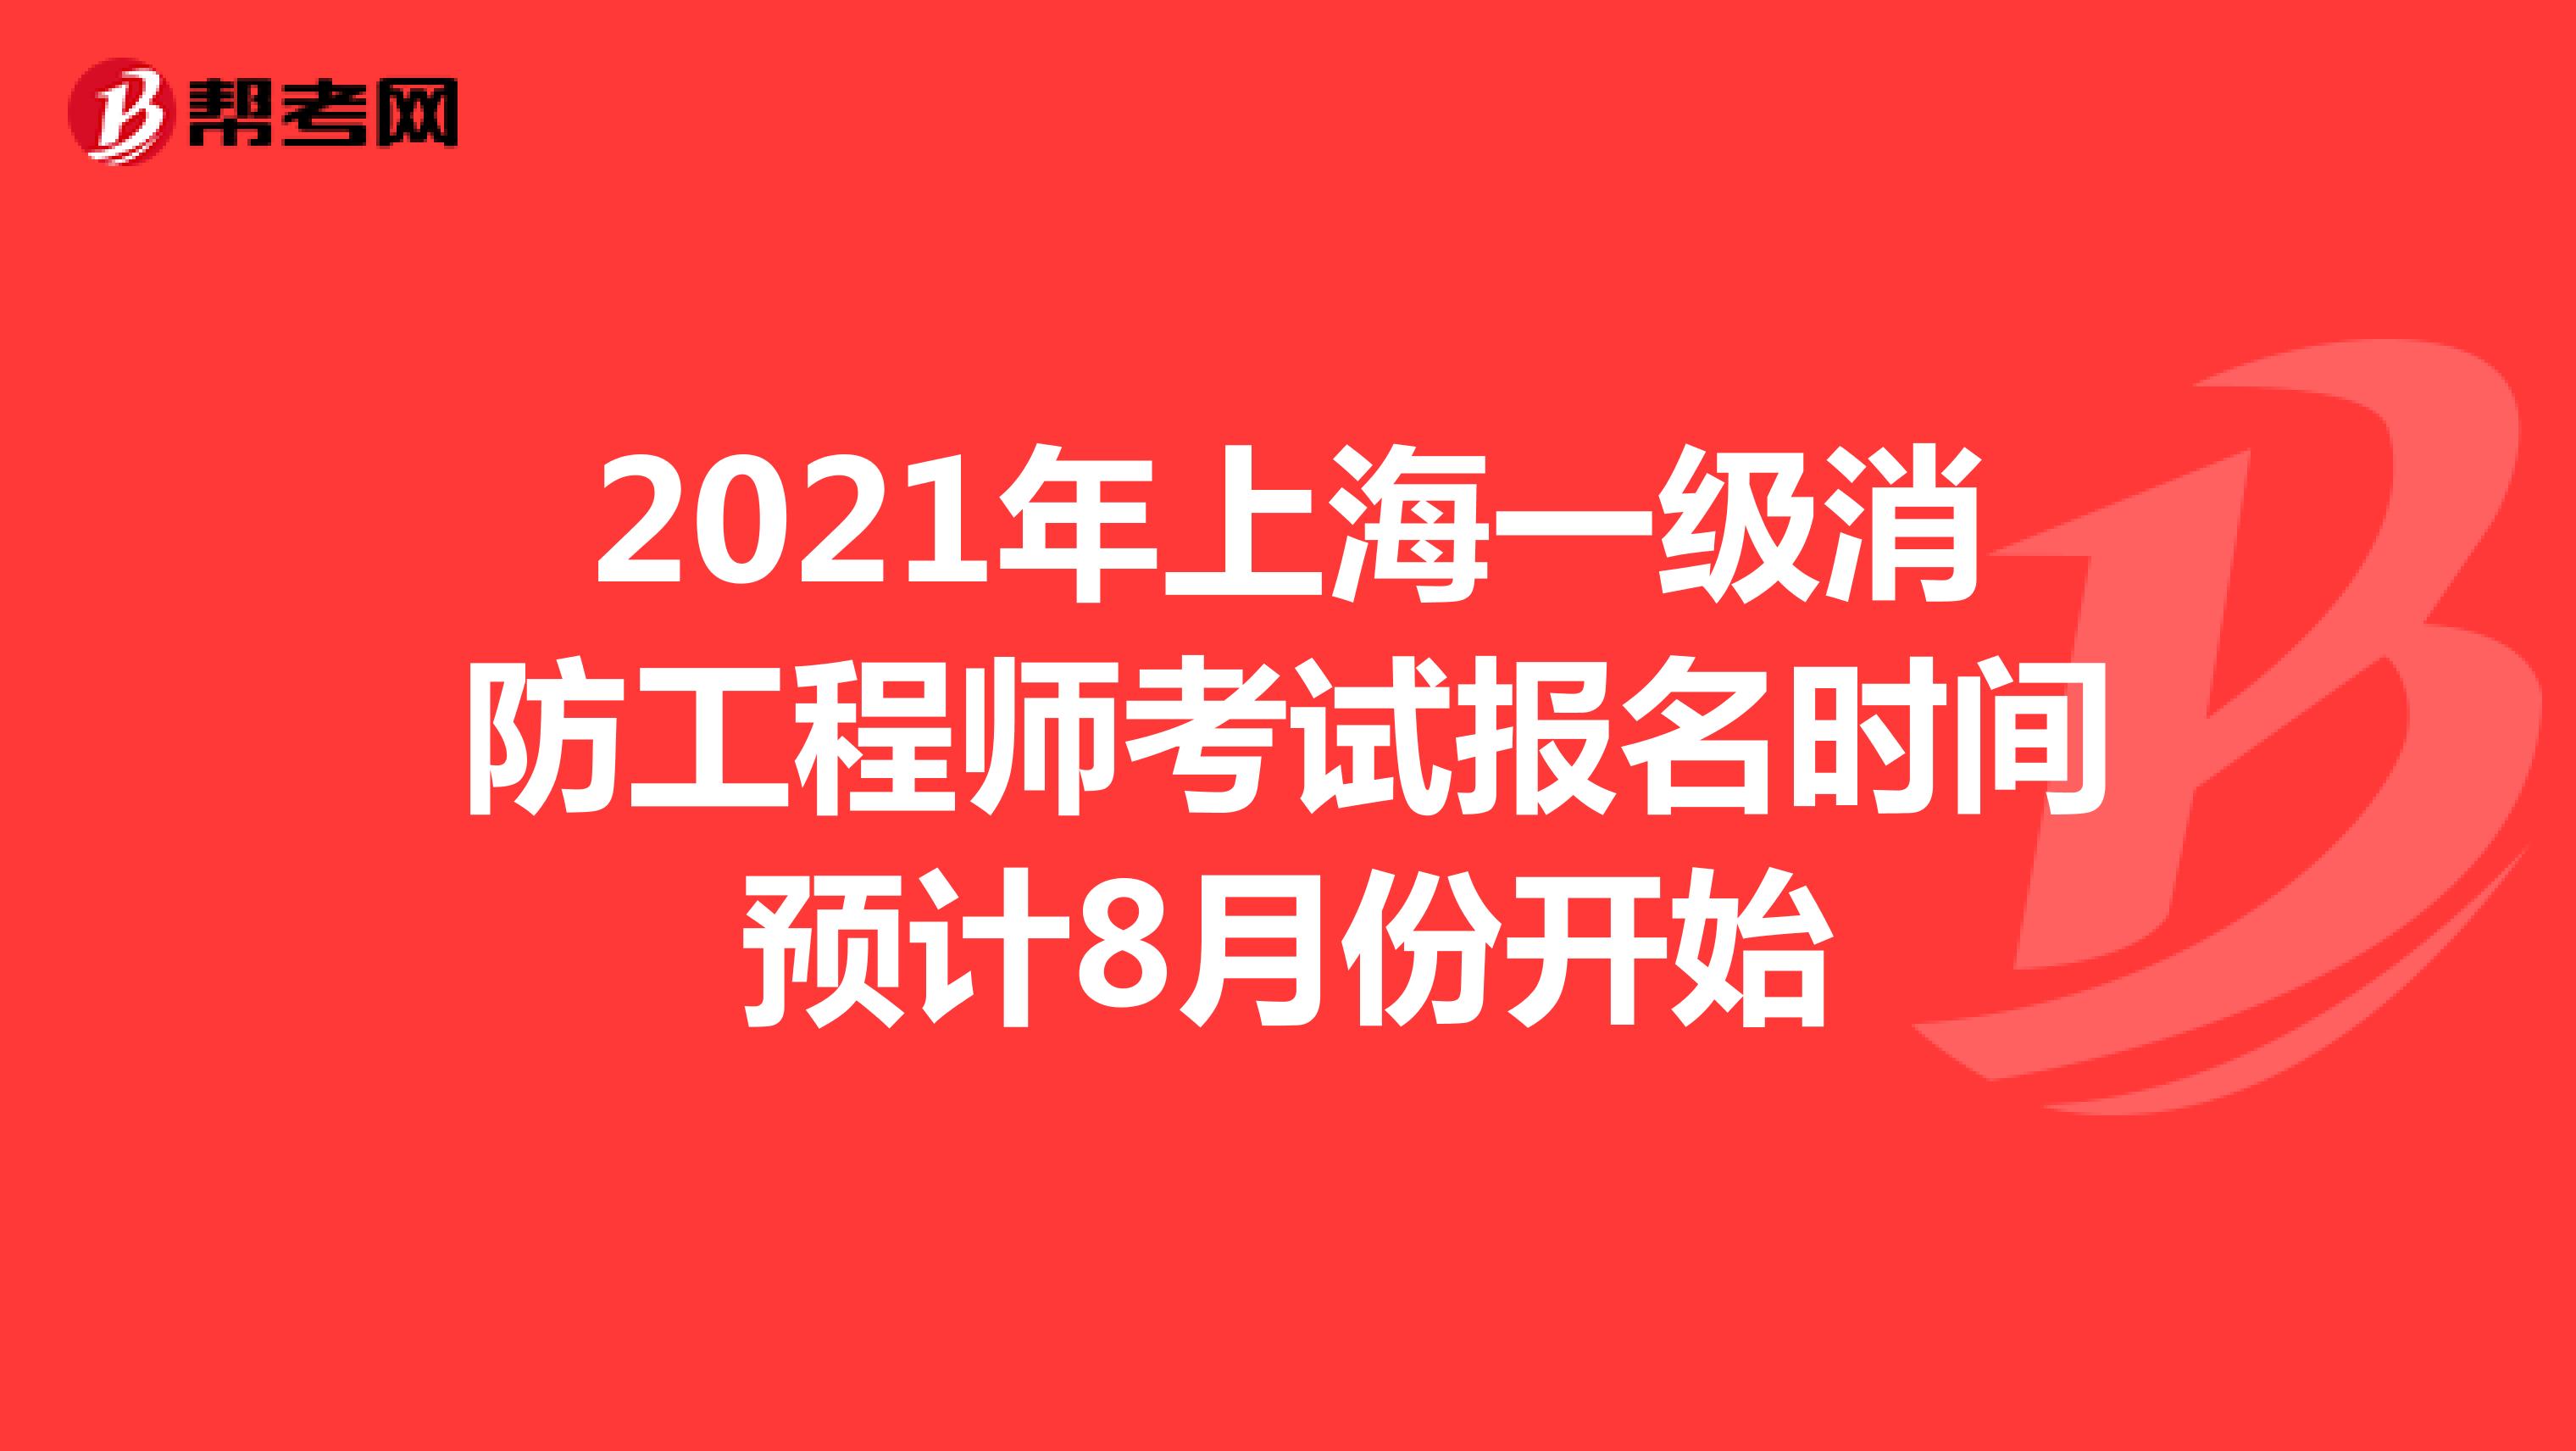 2021年上海一级消防工程师考试报名时间预计8月份开始